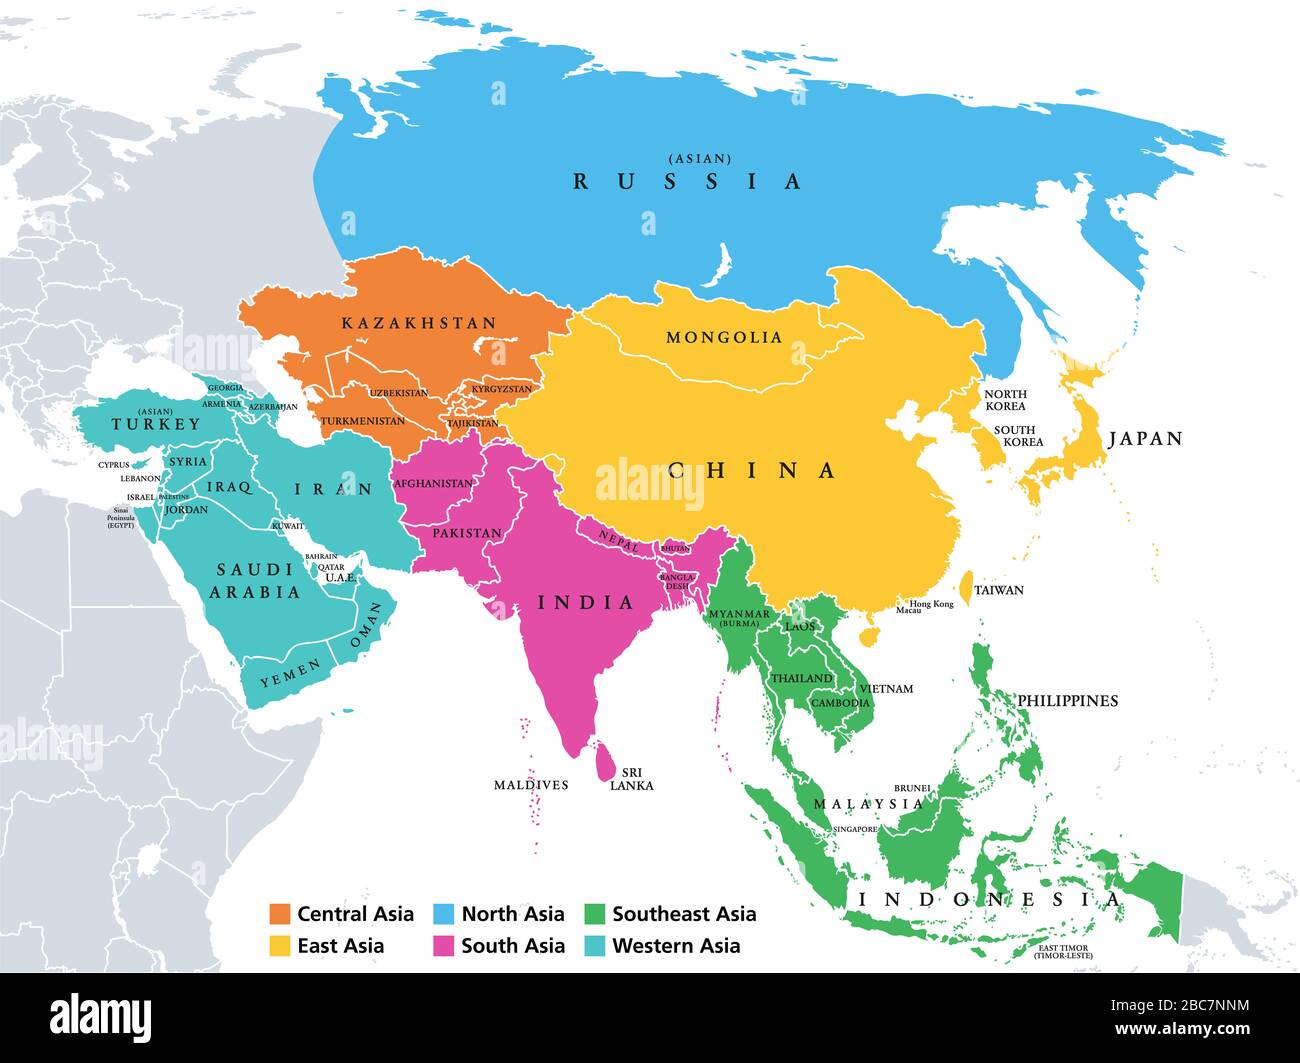 Asia Regiones Mapa Politico Con Un Solo Pais Subregiones Coloreadas Del Continente Asiatico Centro Este Norte Sur Sudeste Asia Occidental Fotografia De Stock Alamy